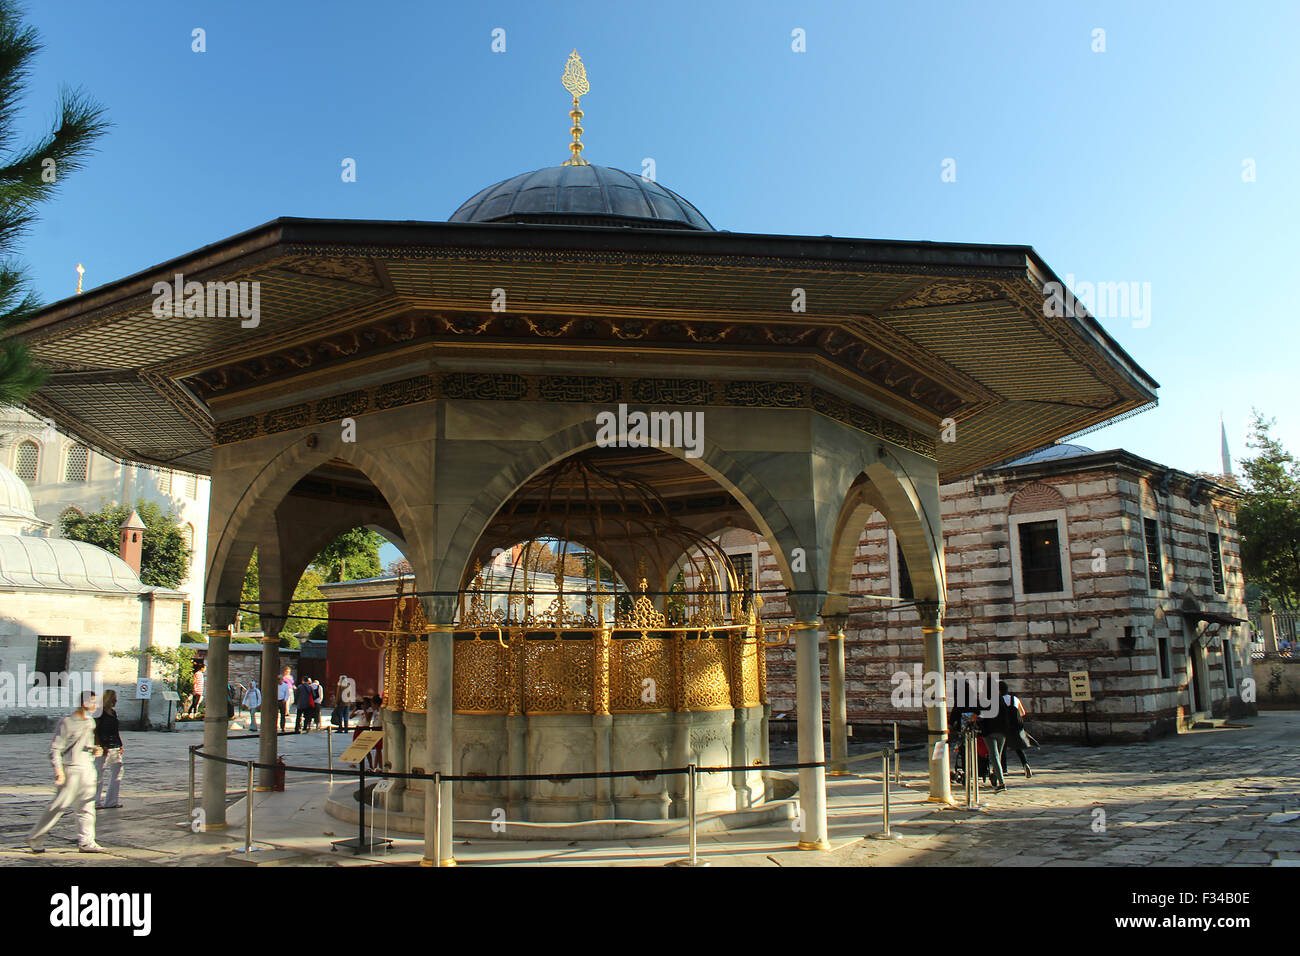 Fontana ornata di abluzione rituale prima di entrare nell'Hagia Sophia in Istanbul, Turchia Foto Stock